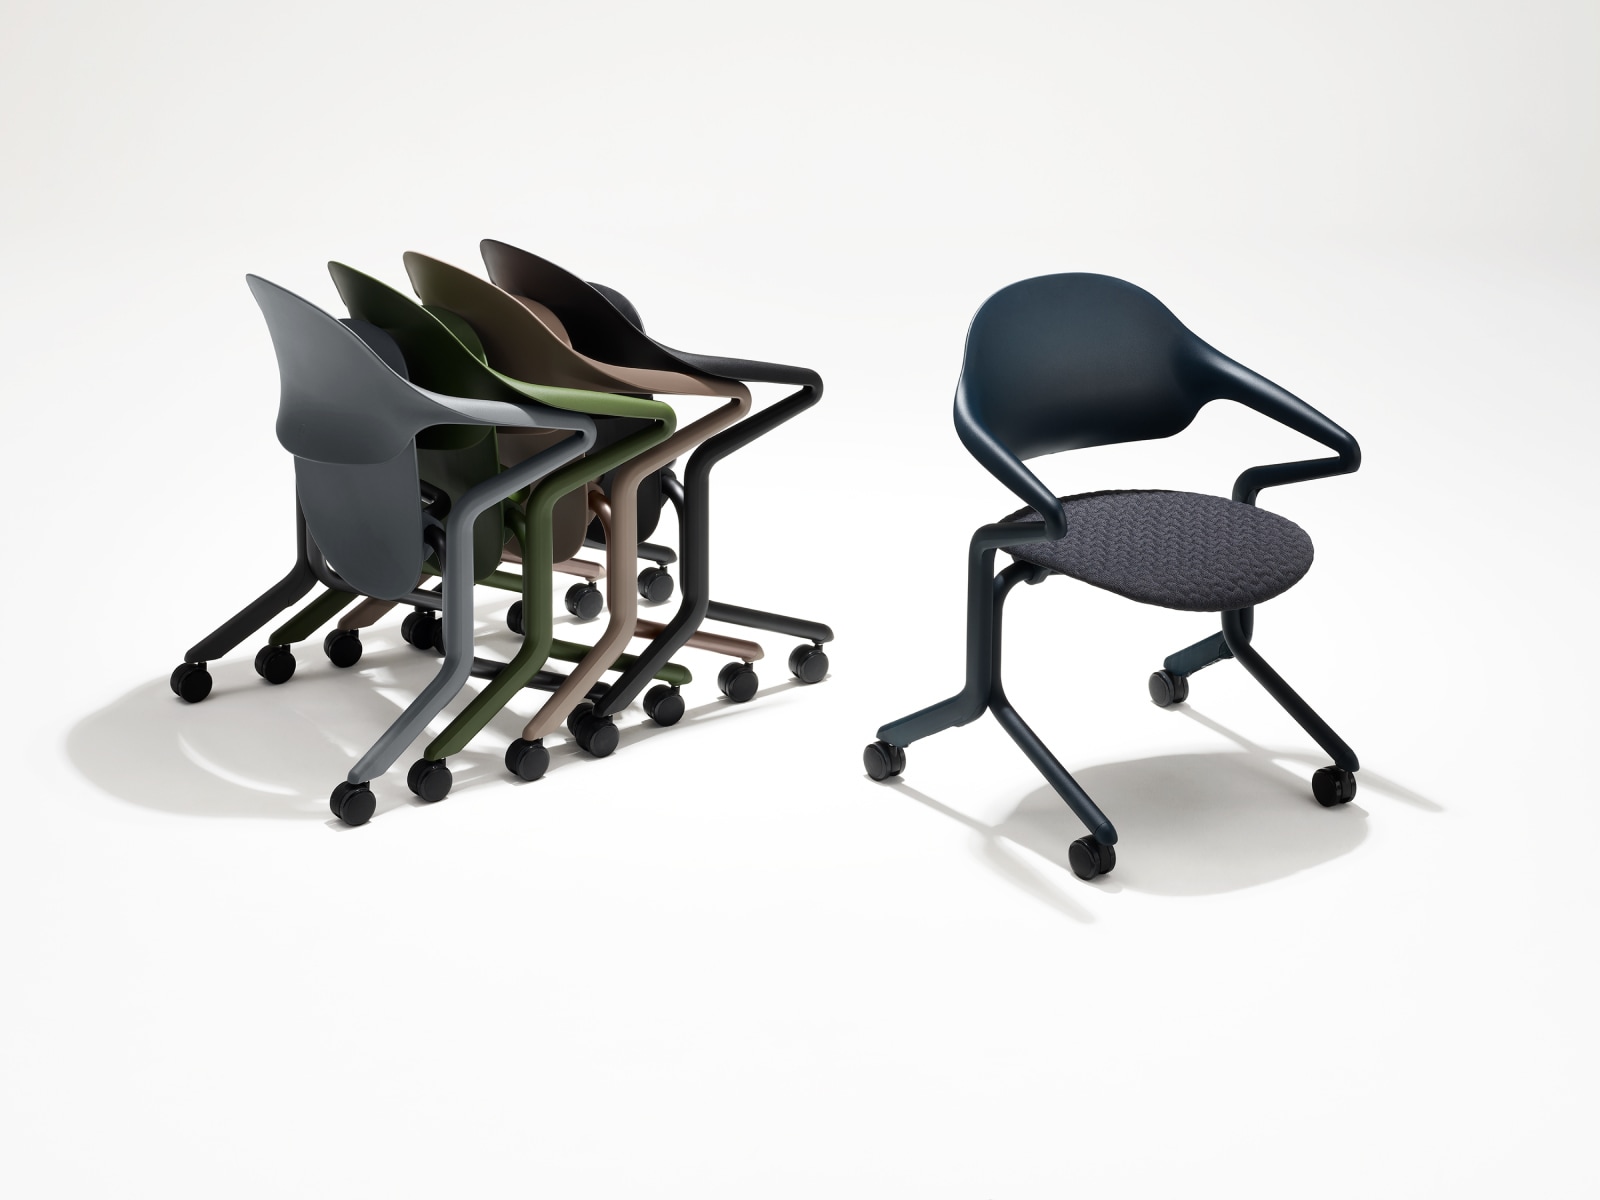 Quattro sedie impilabili Fuld in vari colori e finiture raggruppate accanto a un'unica sedia impilabile Fuld in Nightfall con tessuto a maglia 3D.